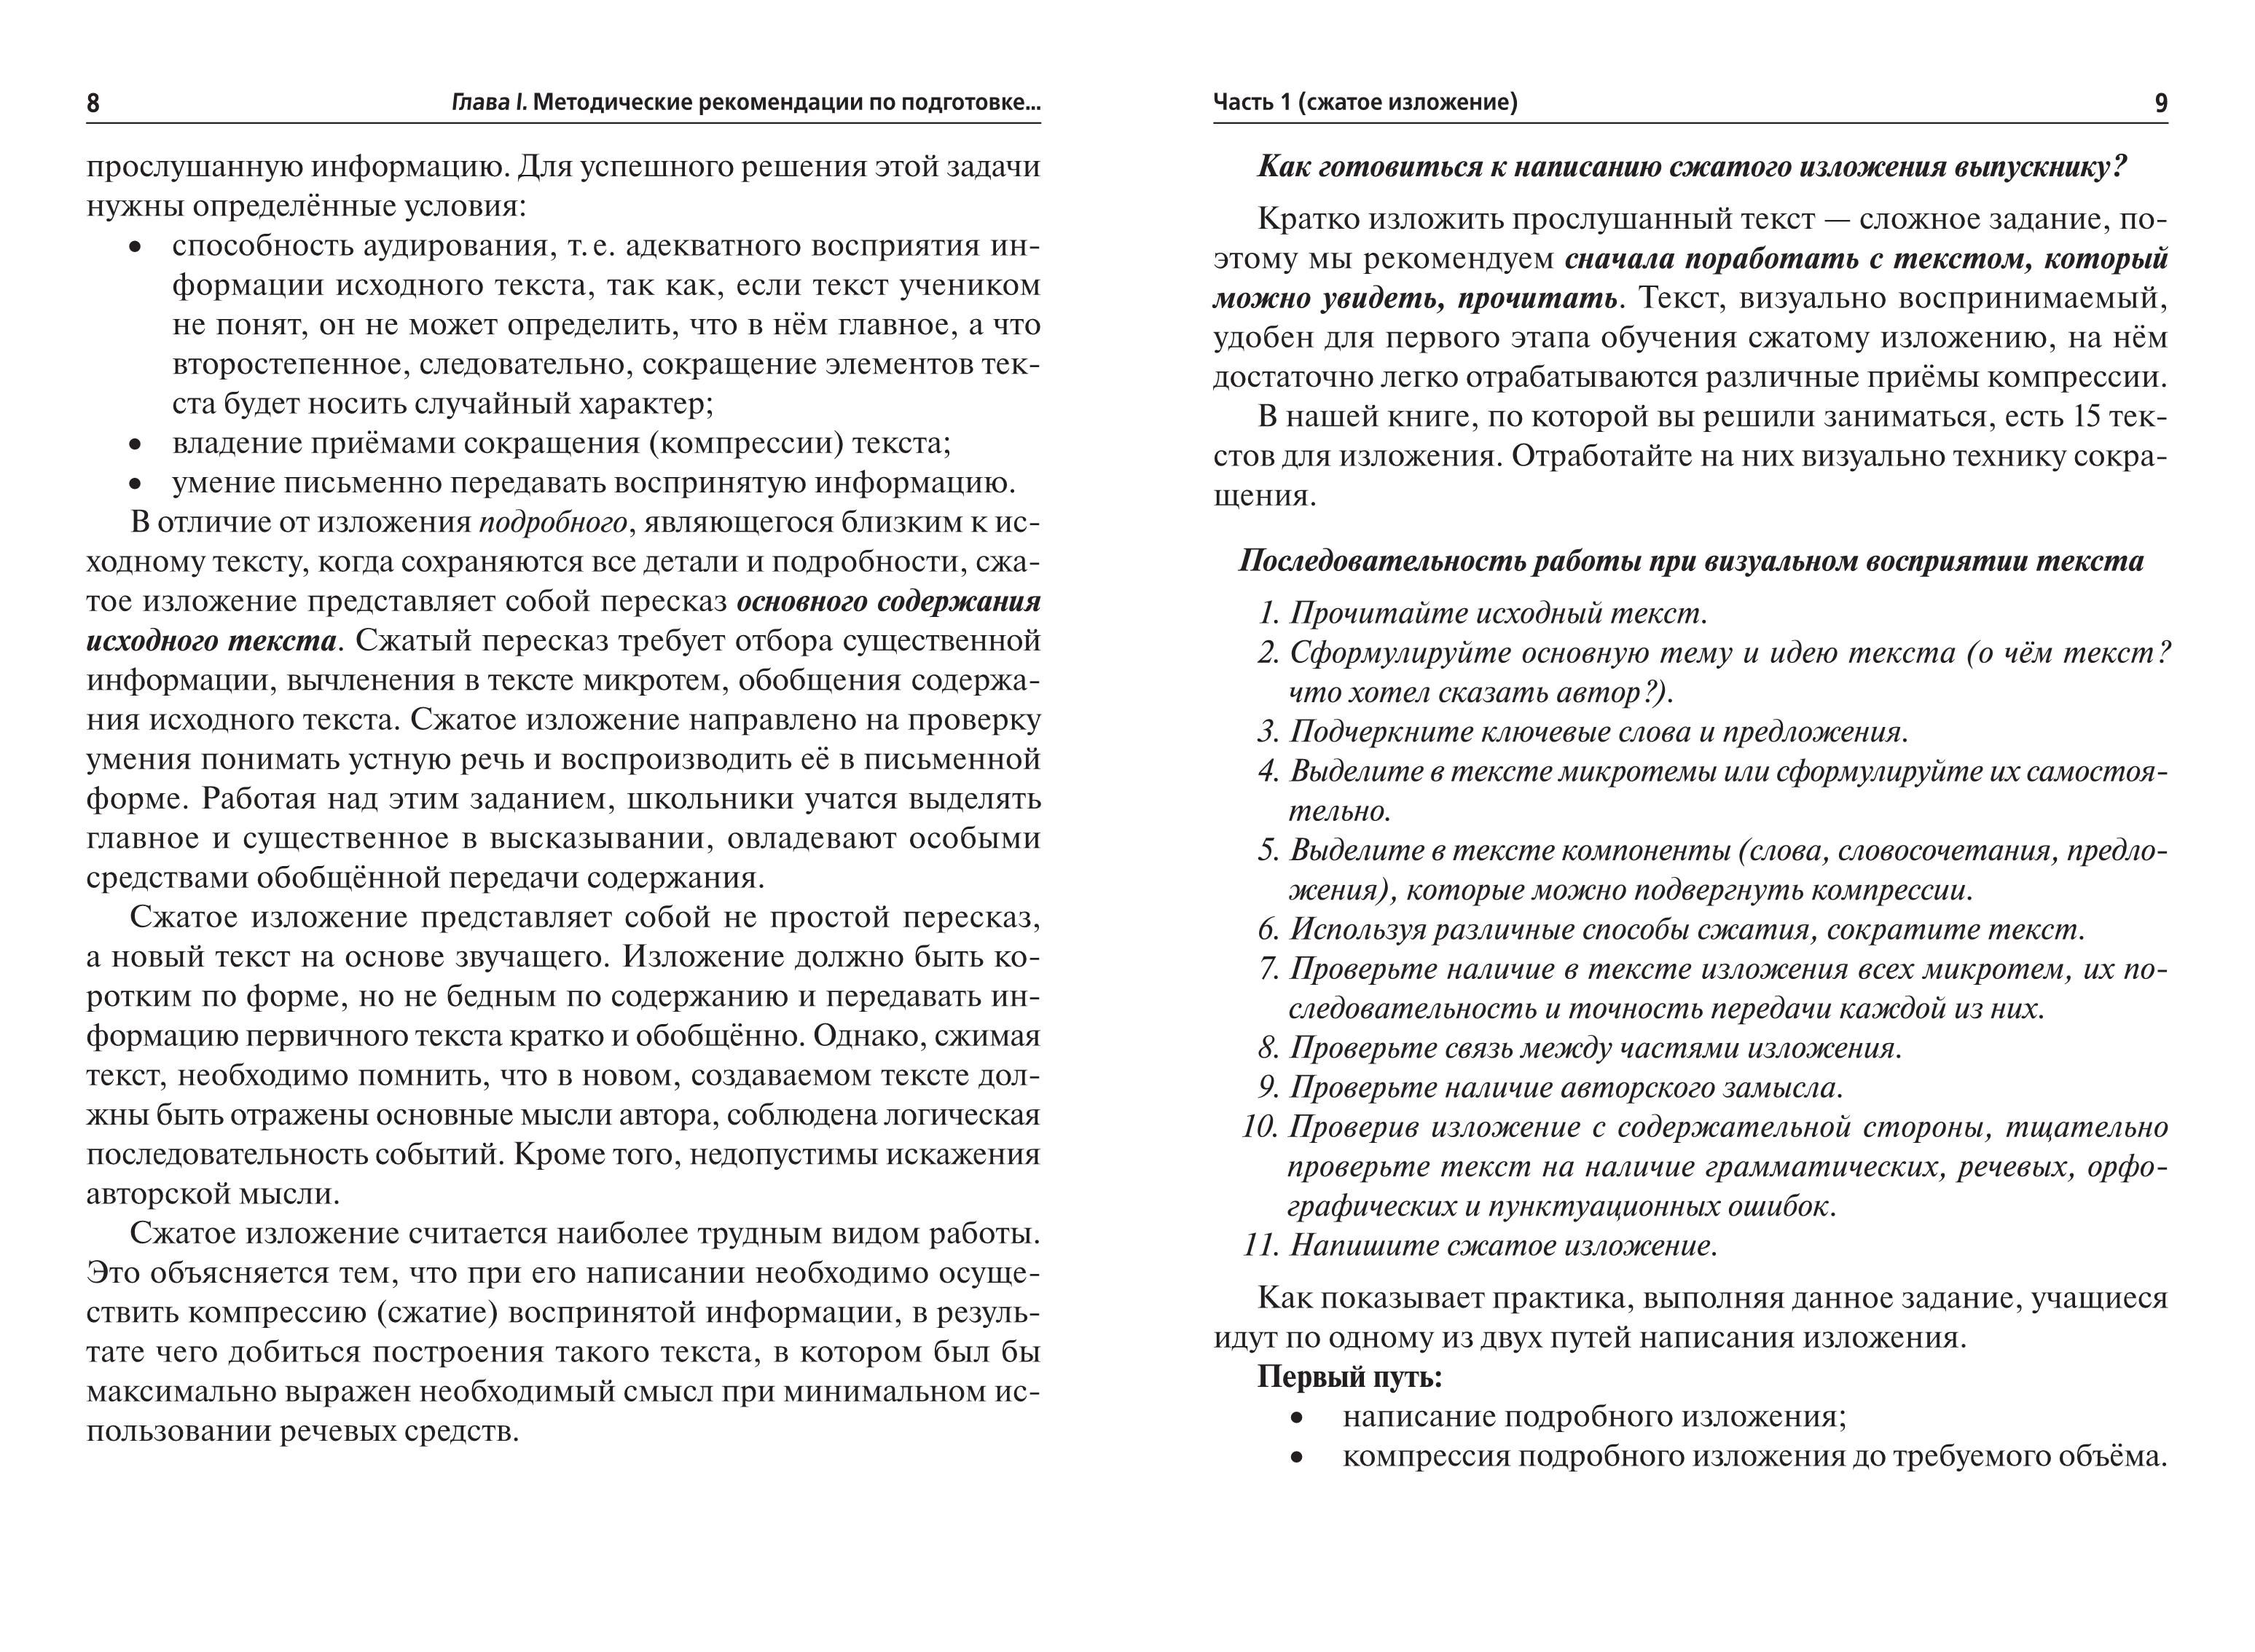 Русский язык. Подготовка к ОГЭ-2022. 9 класс. 30 тренировочных вариантов по демоверсии 2022 года